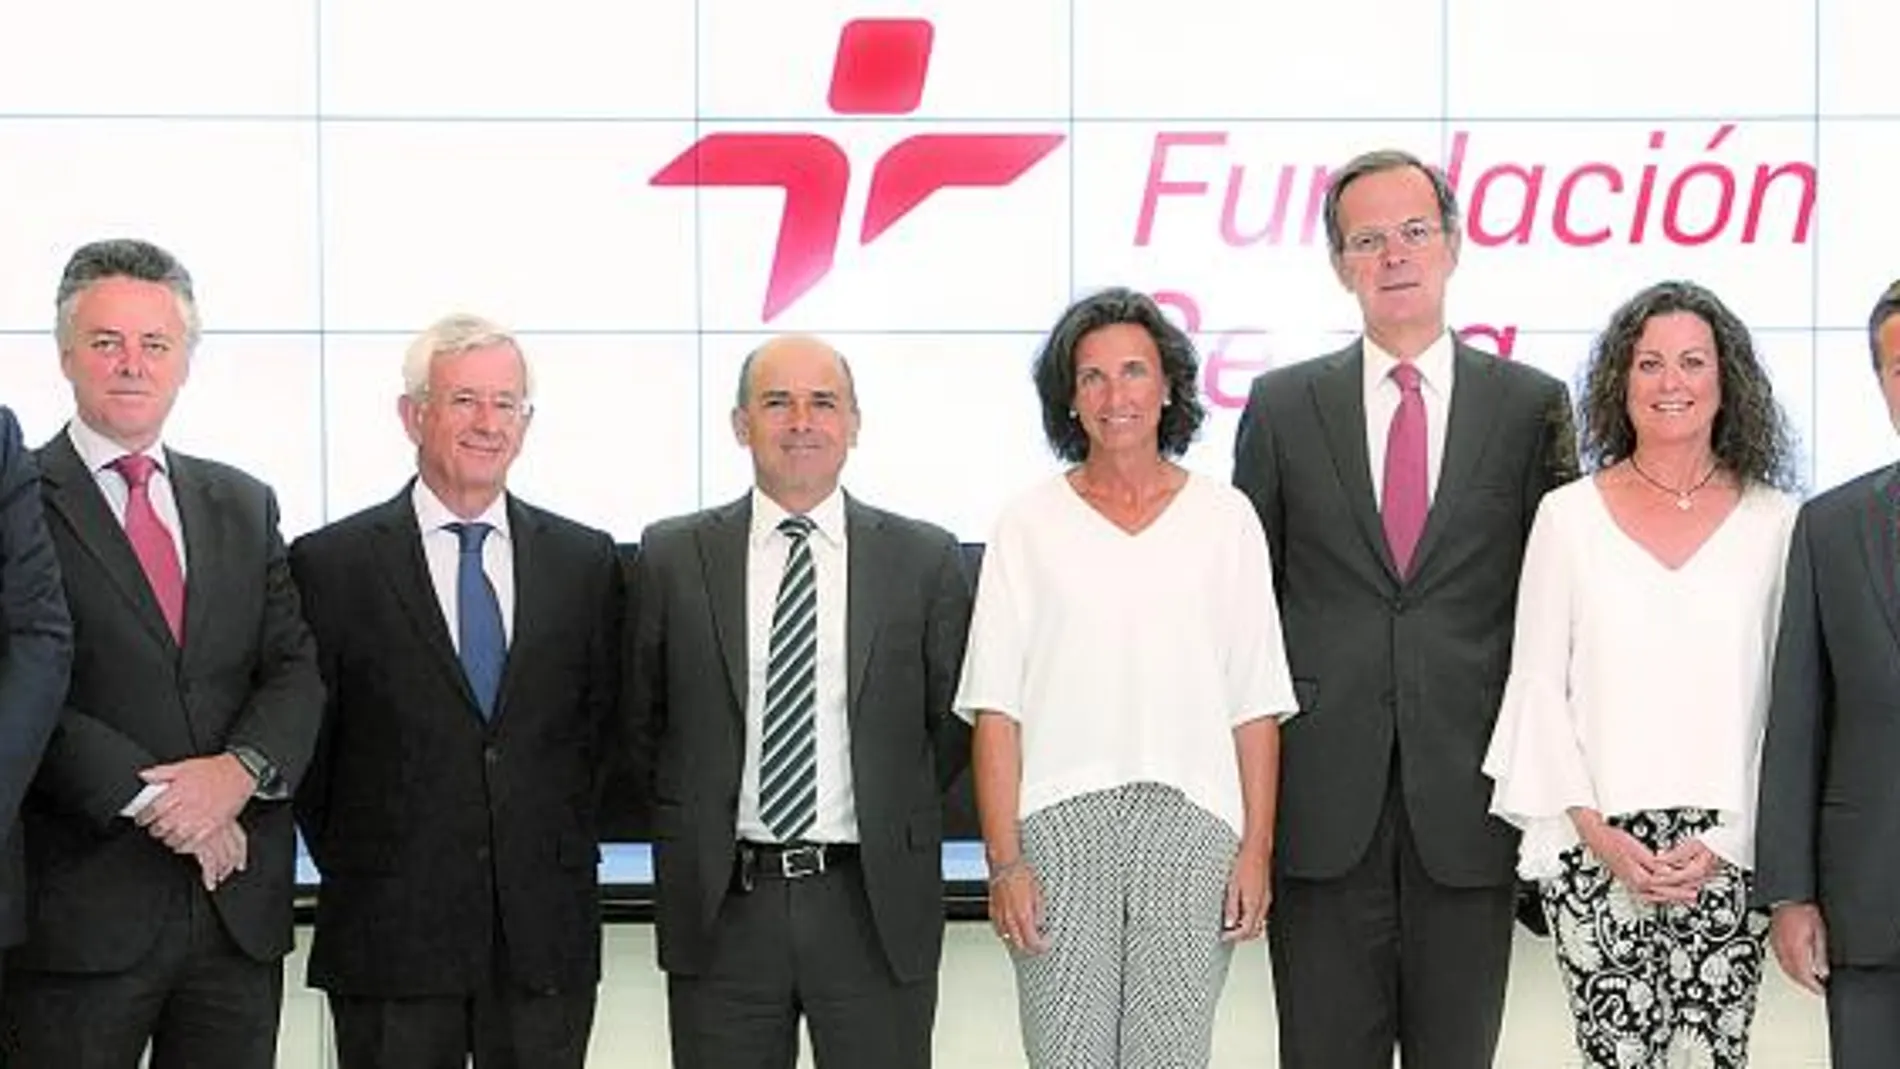 El patronato de la Fundación Cepsa, con Pedro Miró (cuarto por la derecha) como Presidente y Teresa Mañueco (quinta por la derecha) como Directora General